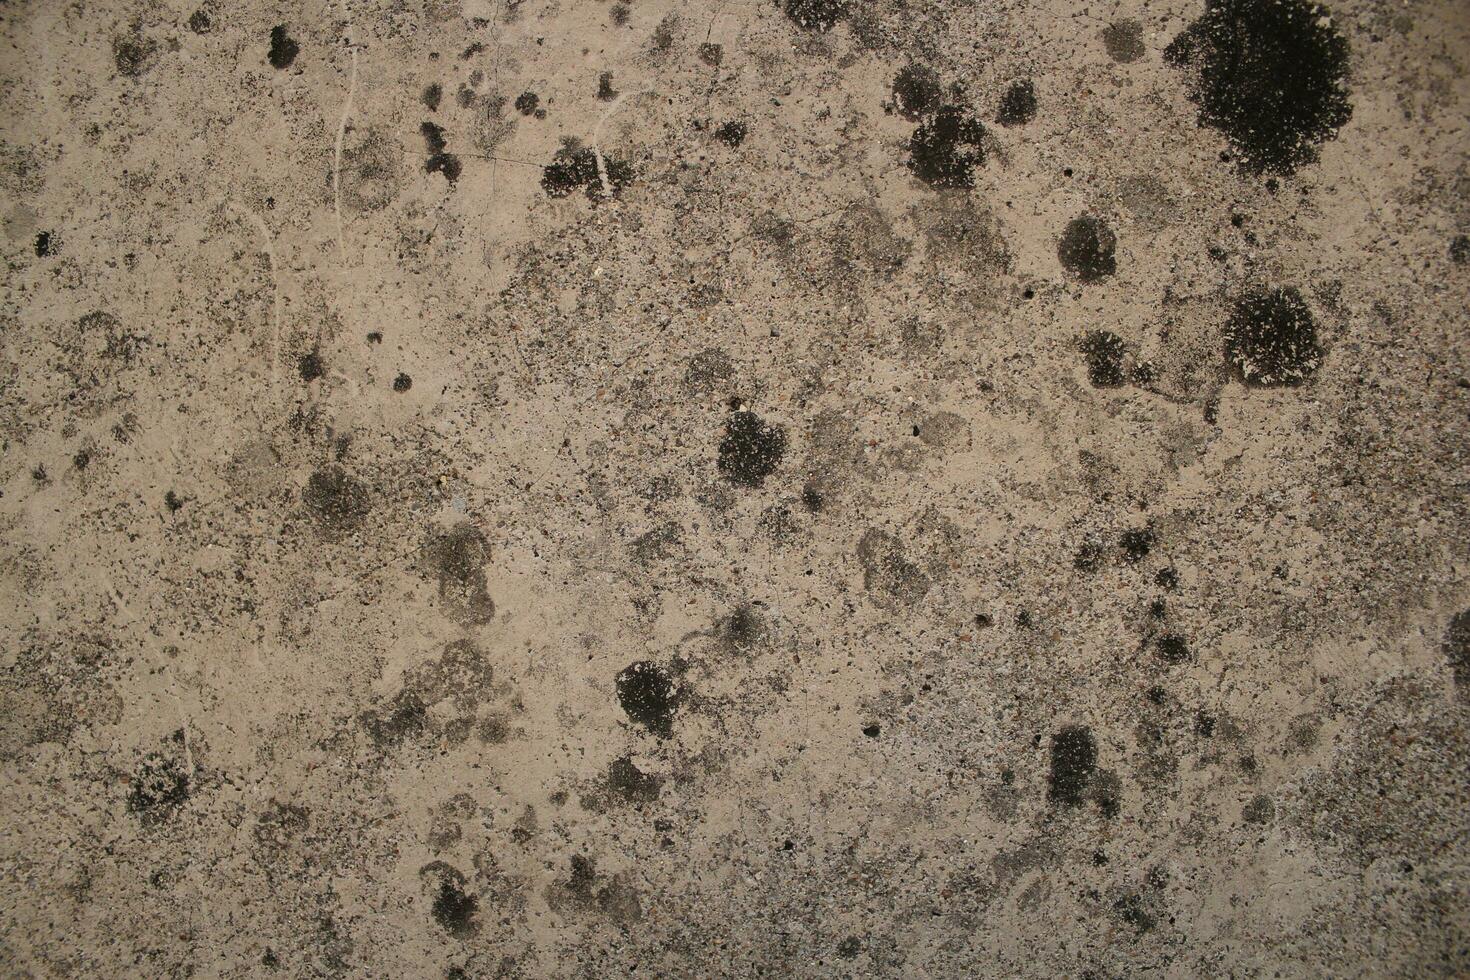 resistido oxidado areia parede fundo, sujo parede superfície, envelhecido areia parede textura foto